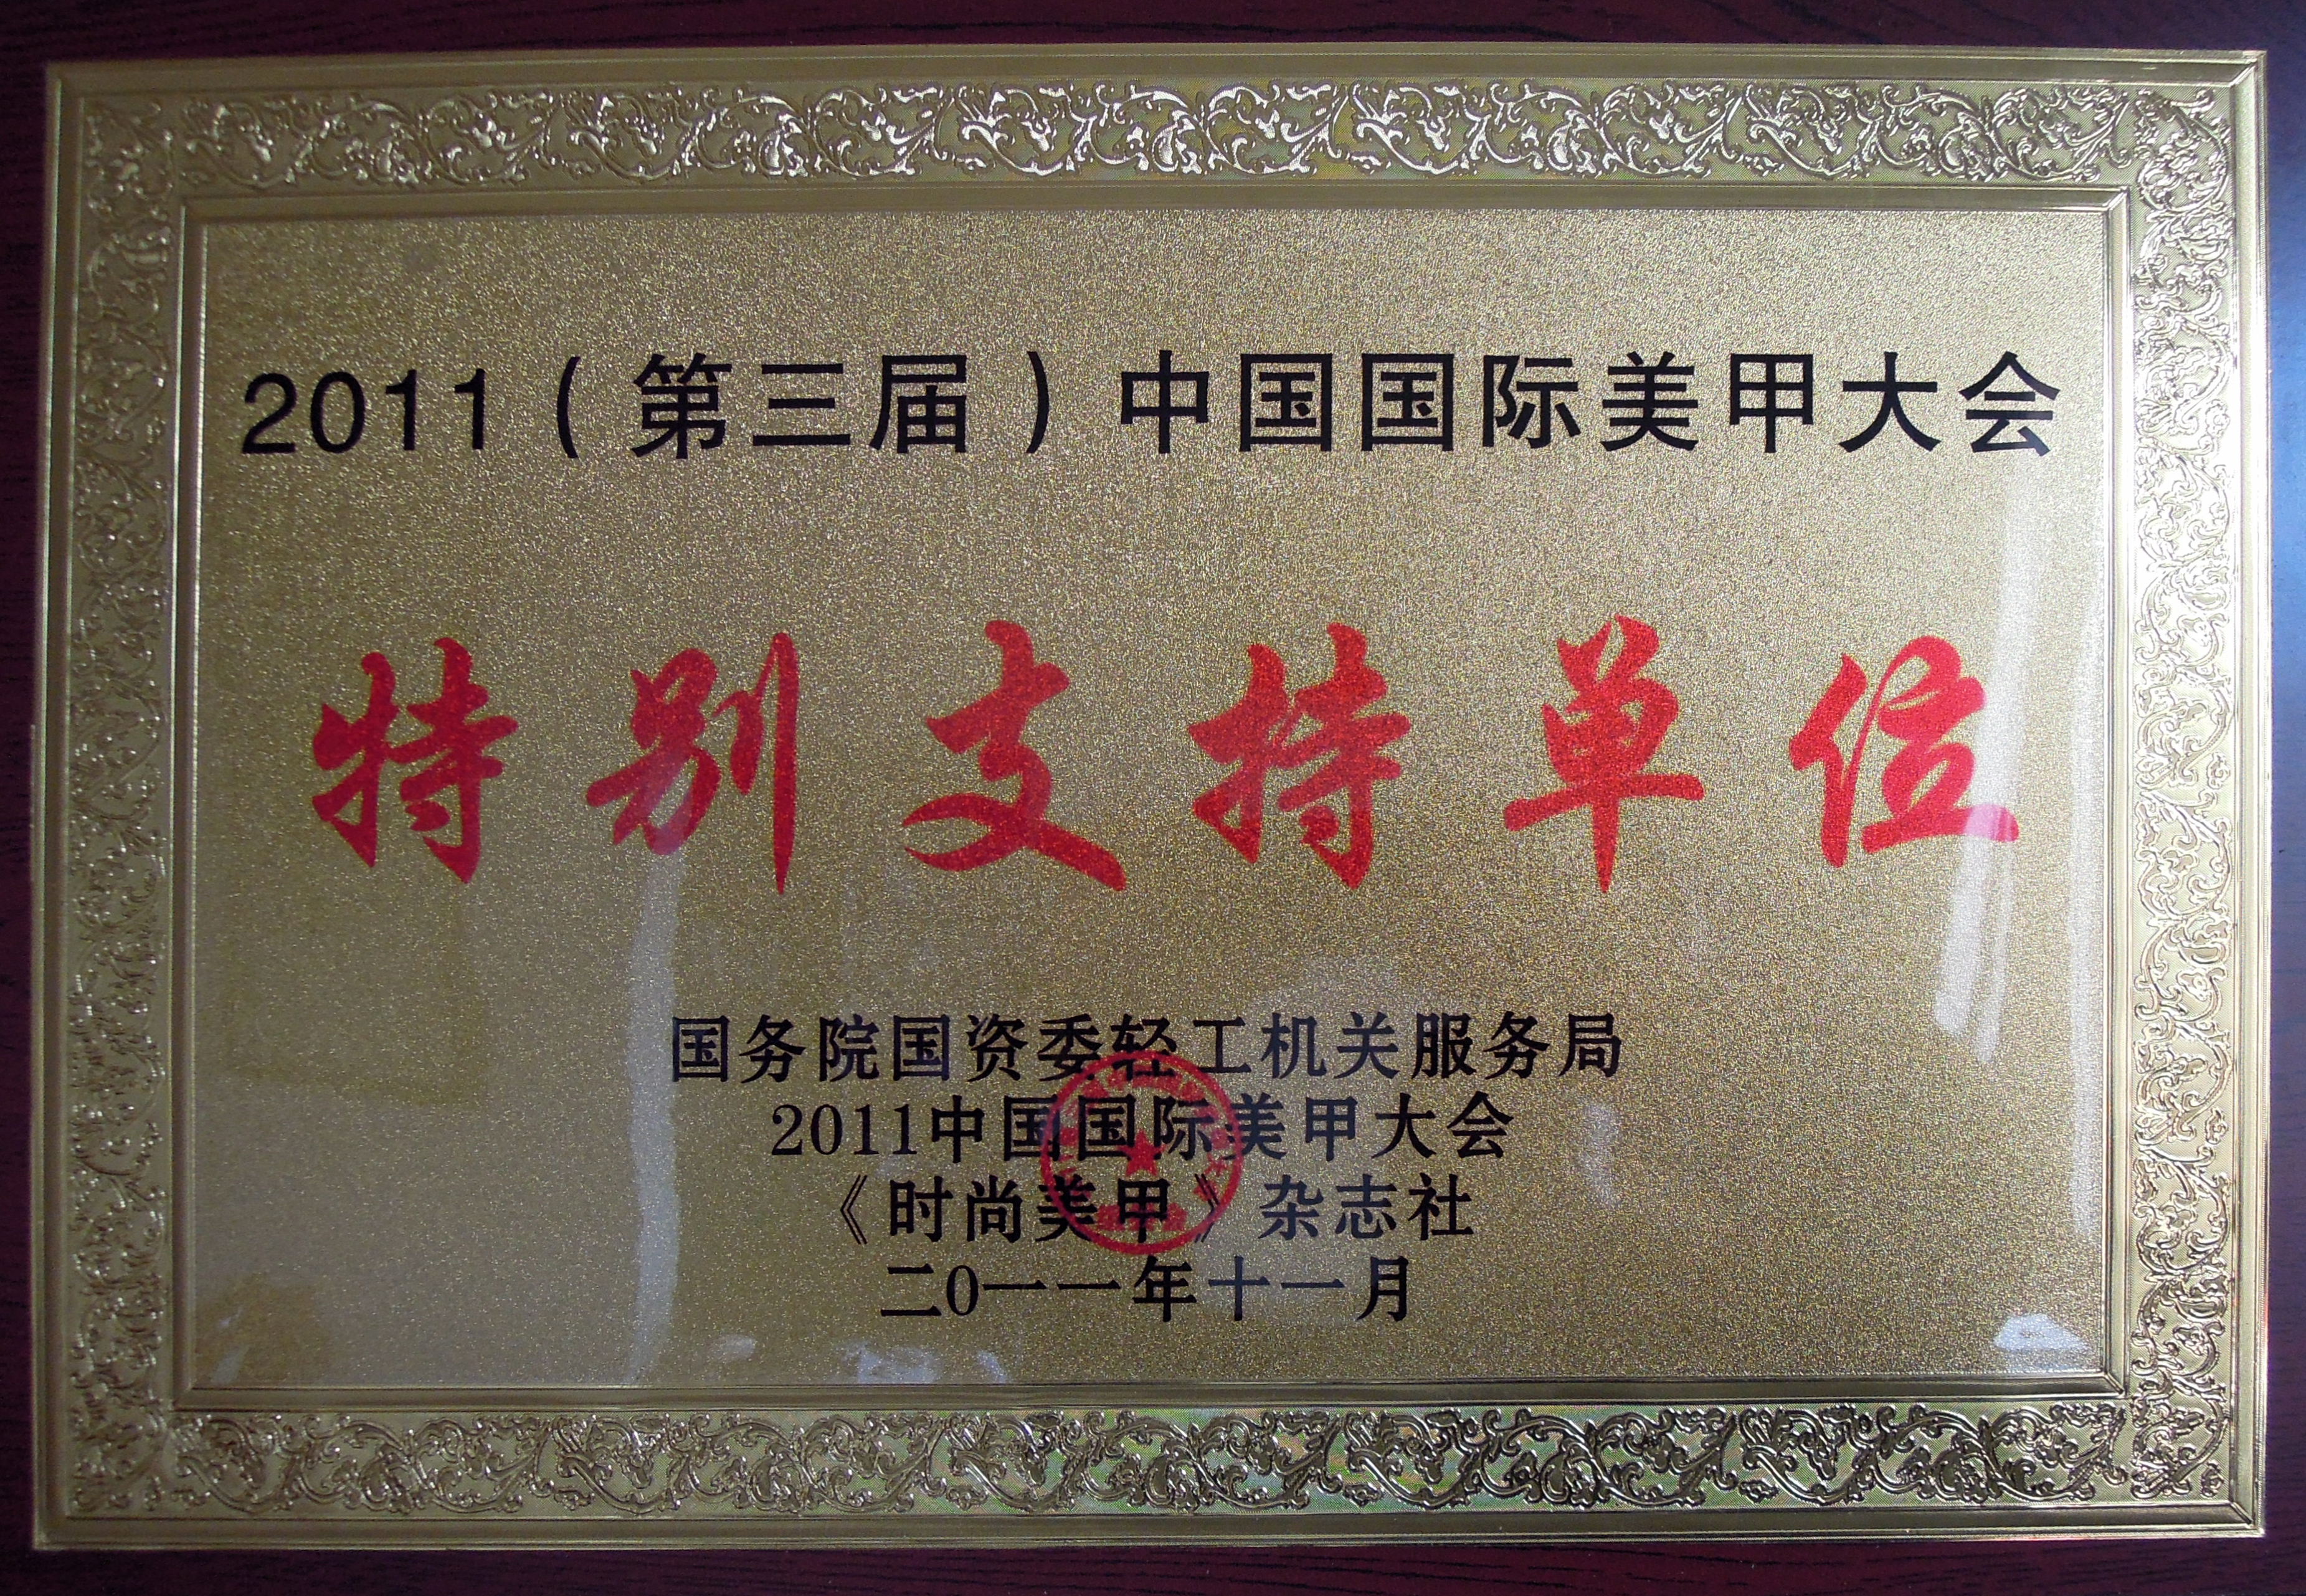 2011 (第三届) 中国国际美甲大会特别支持单位